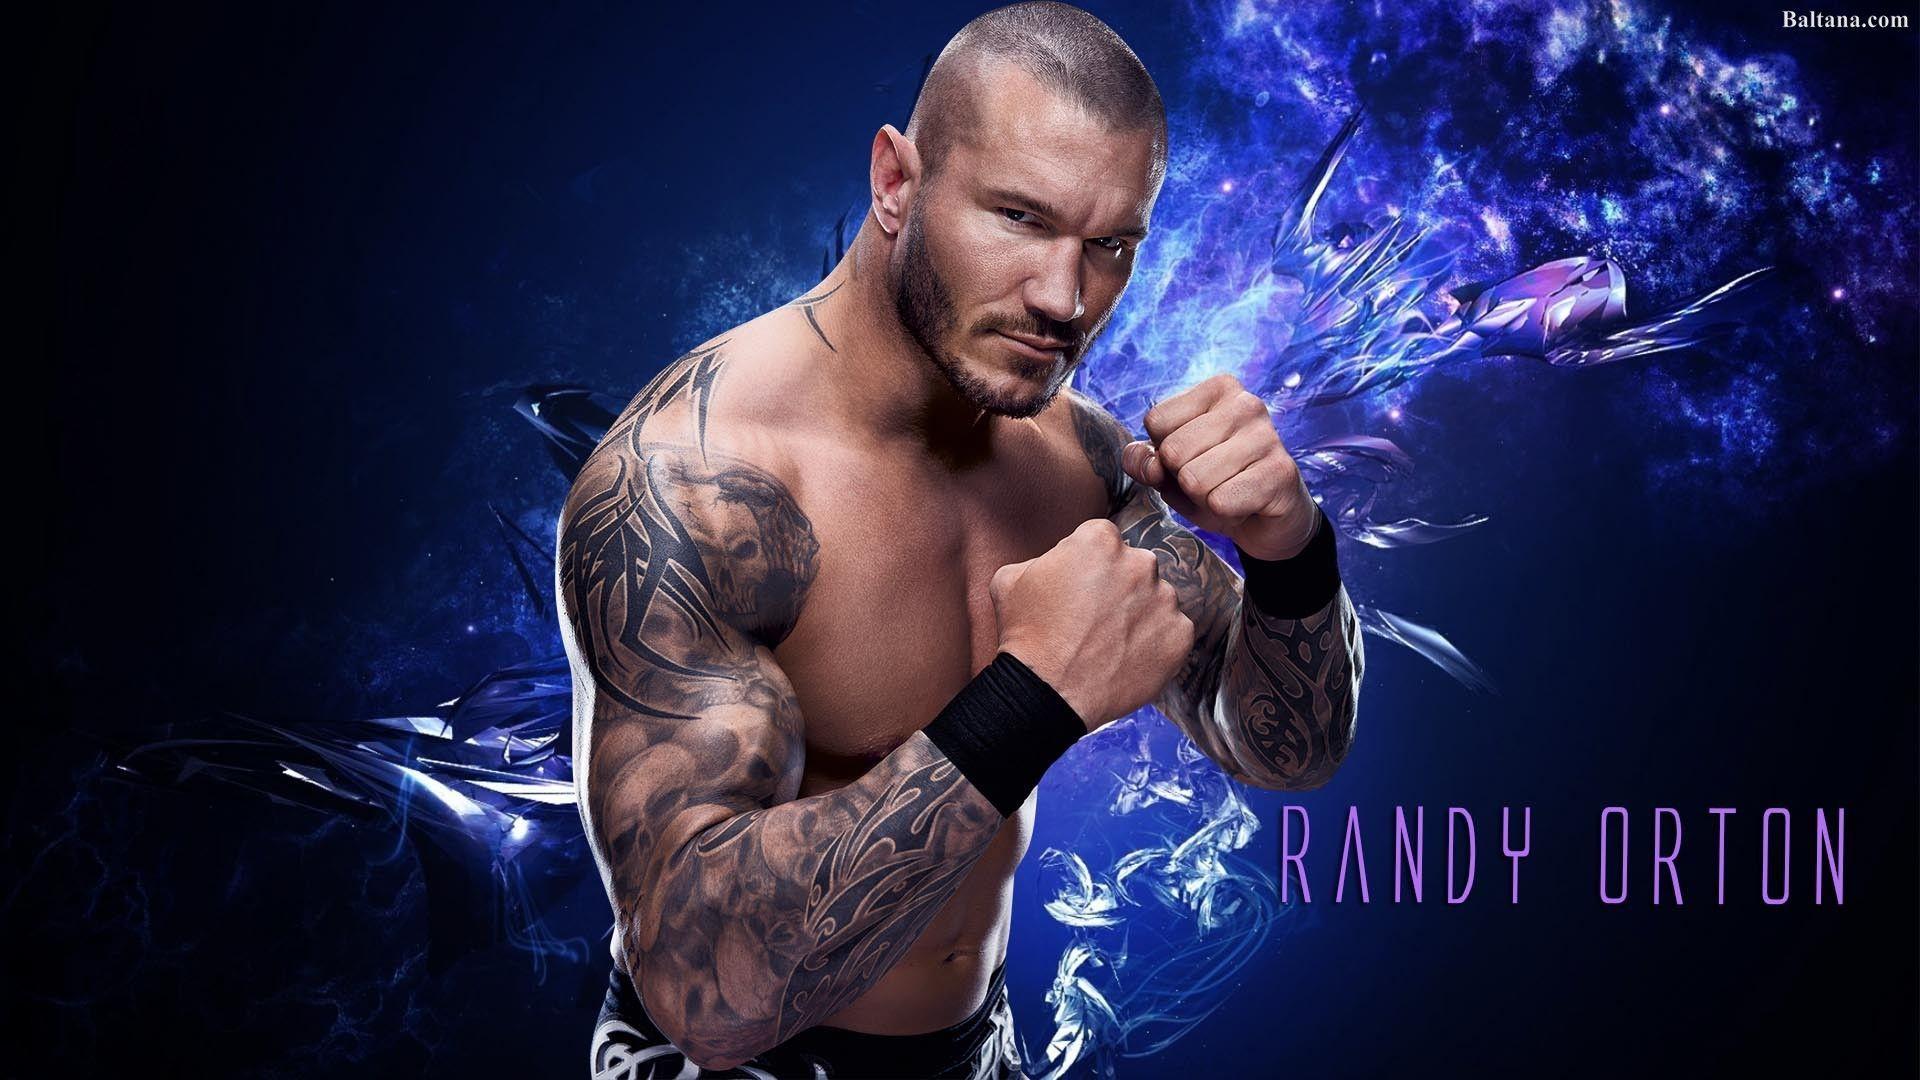 Randy Orton Wallpaper Free Randy Orton Background